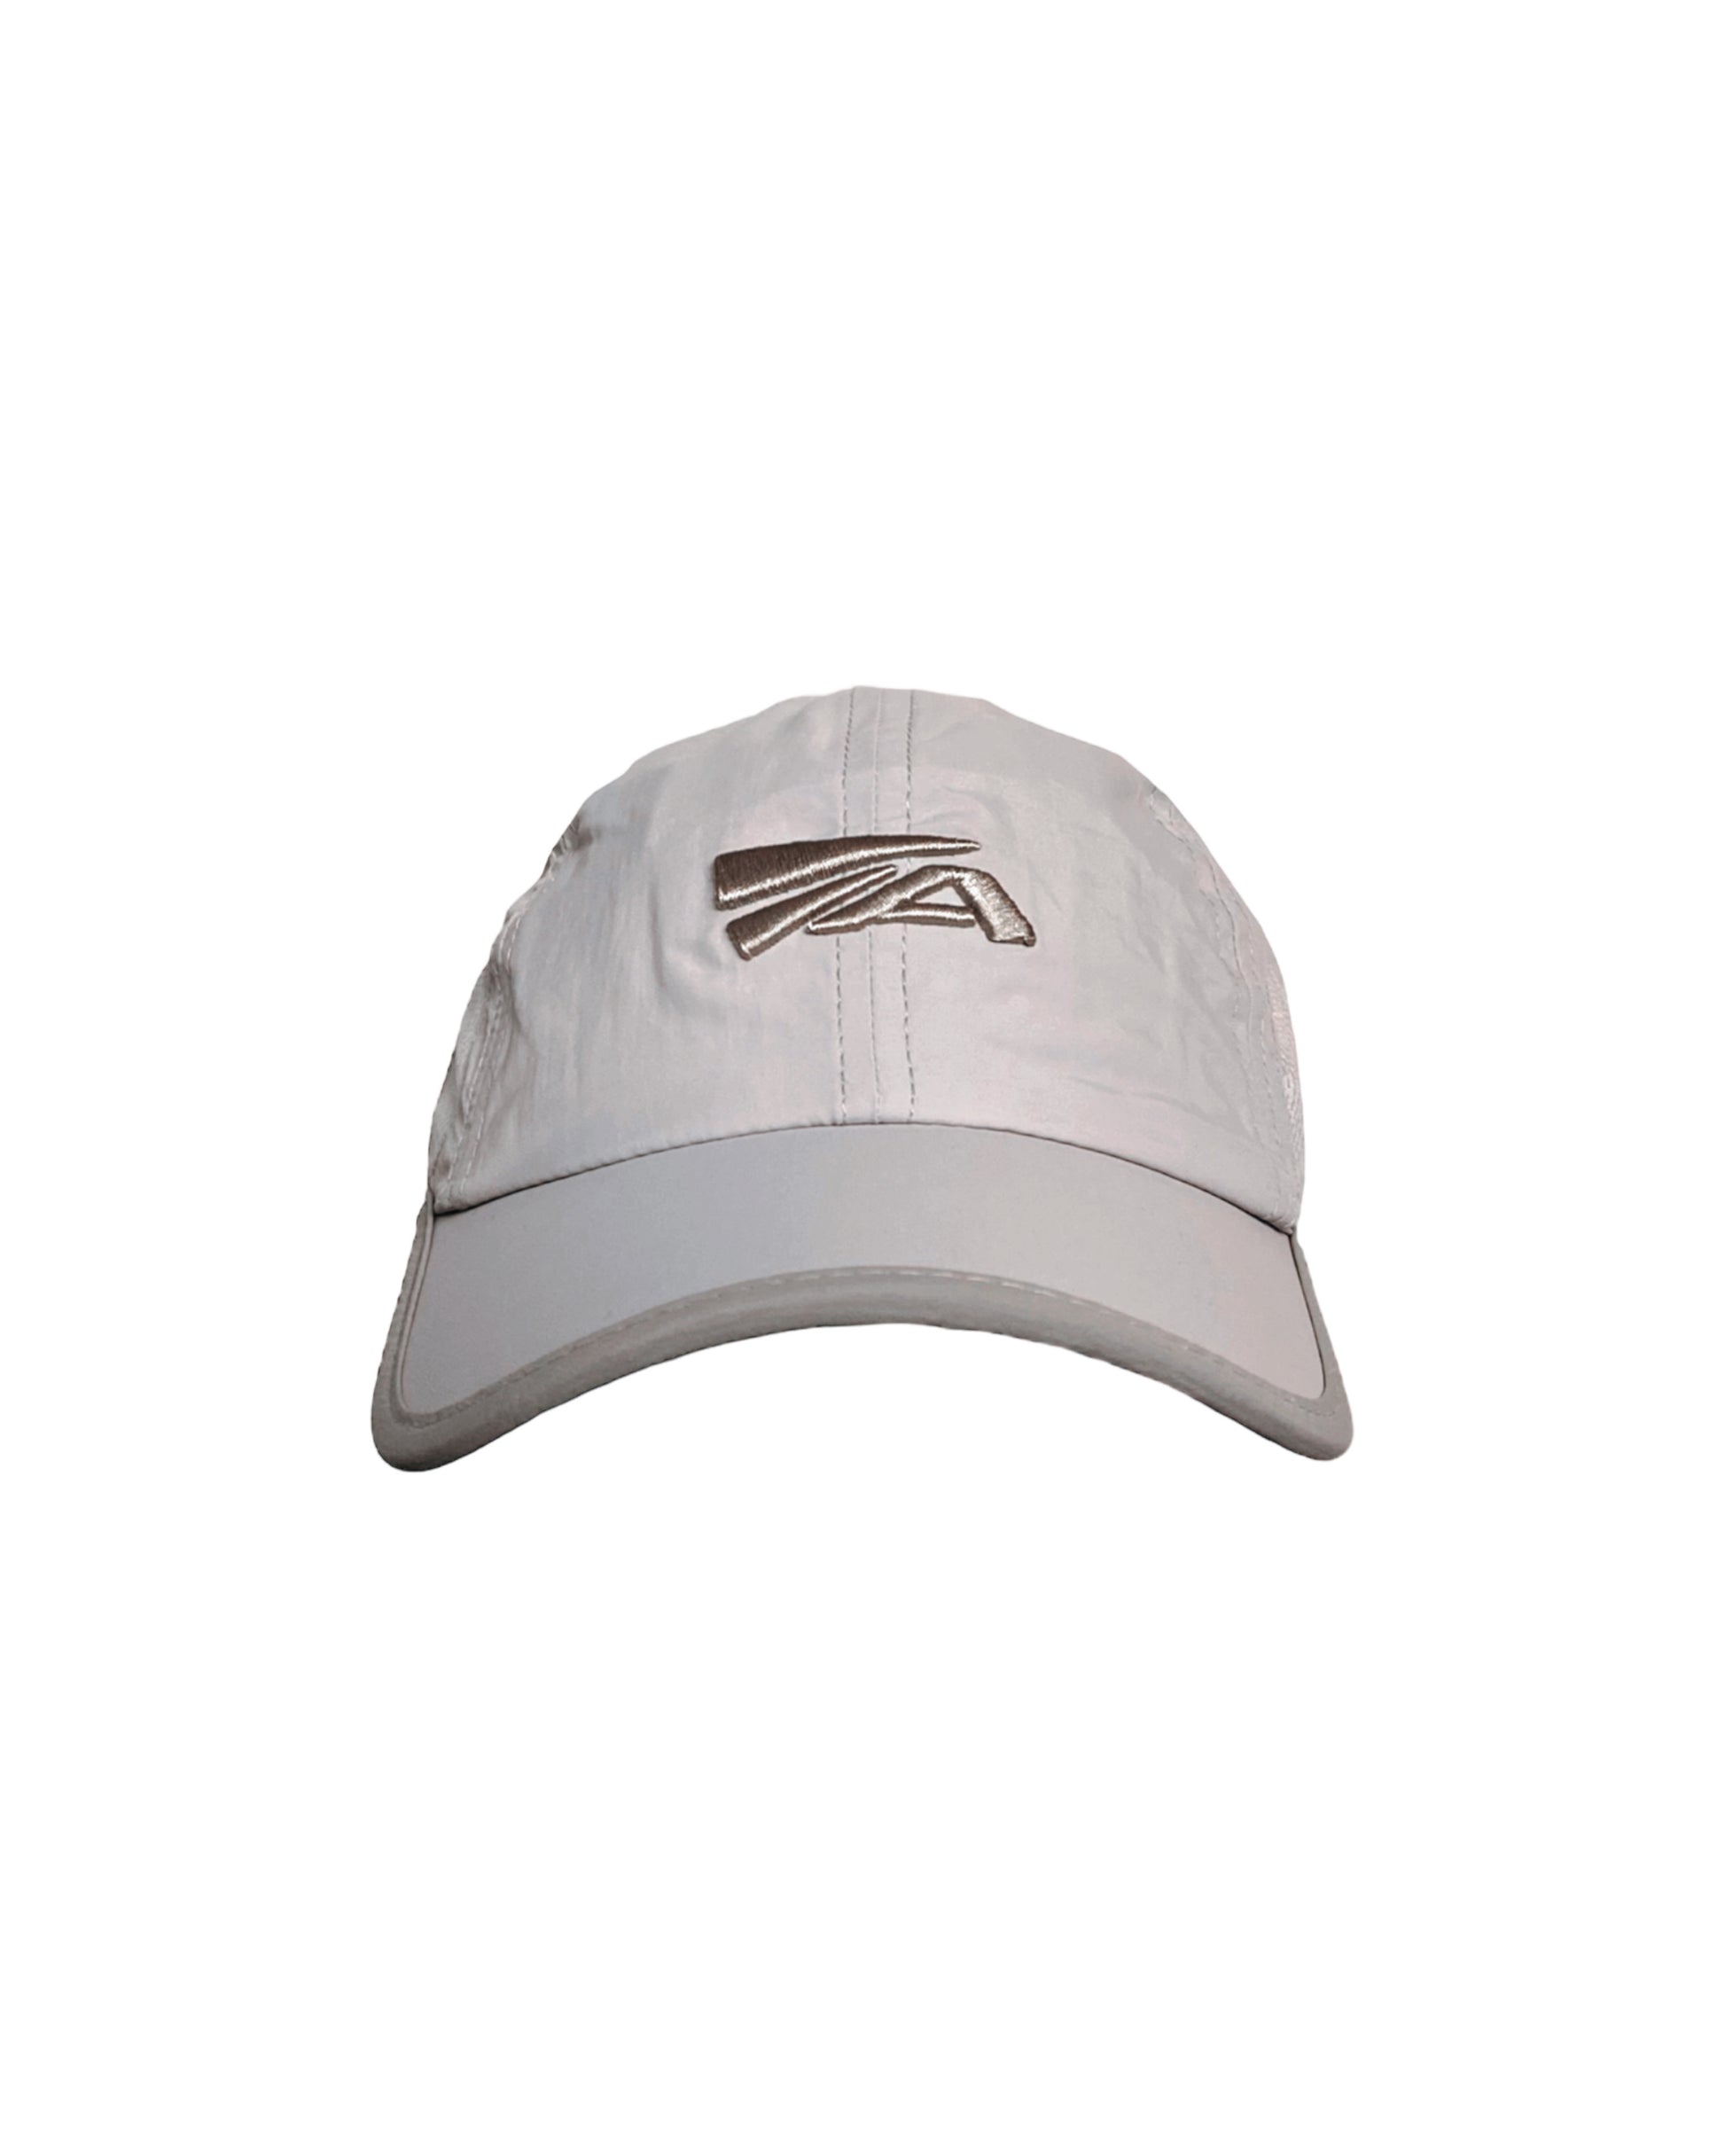 O2 Hat (Gray) - ANGEL ARCADE